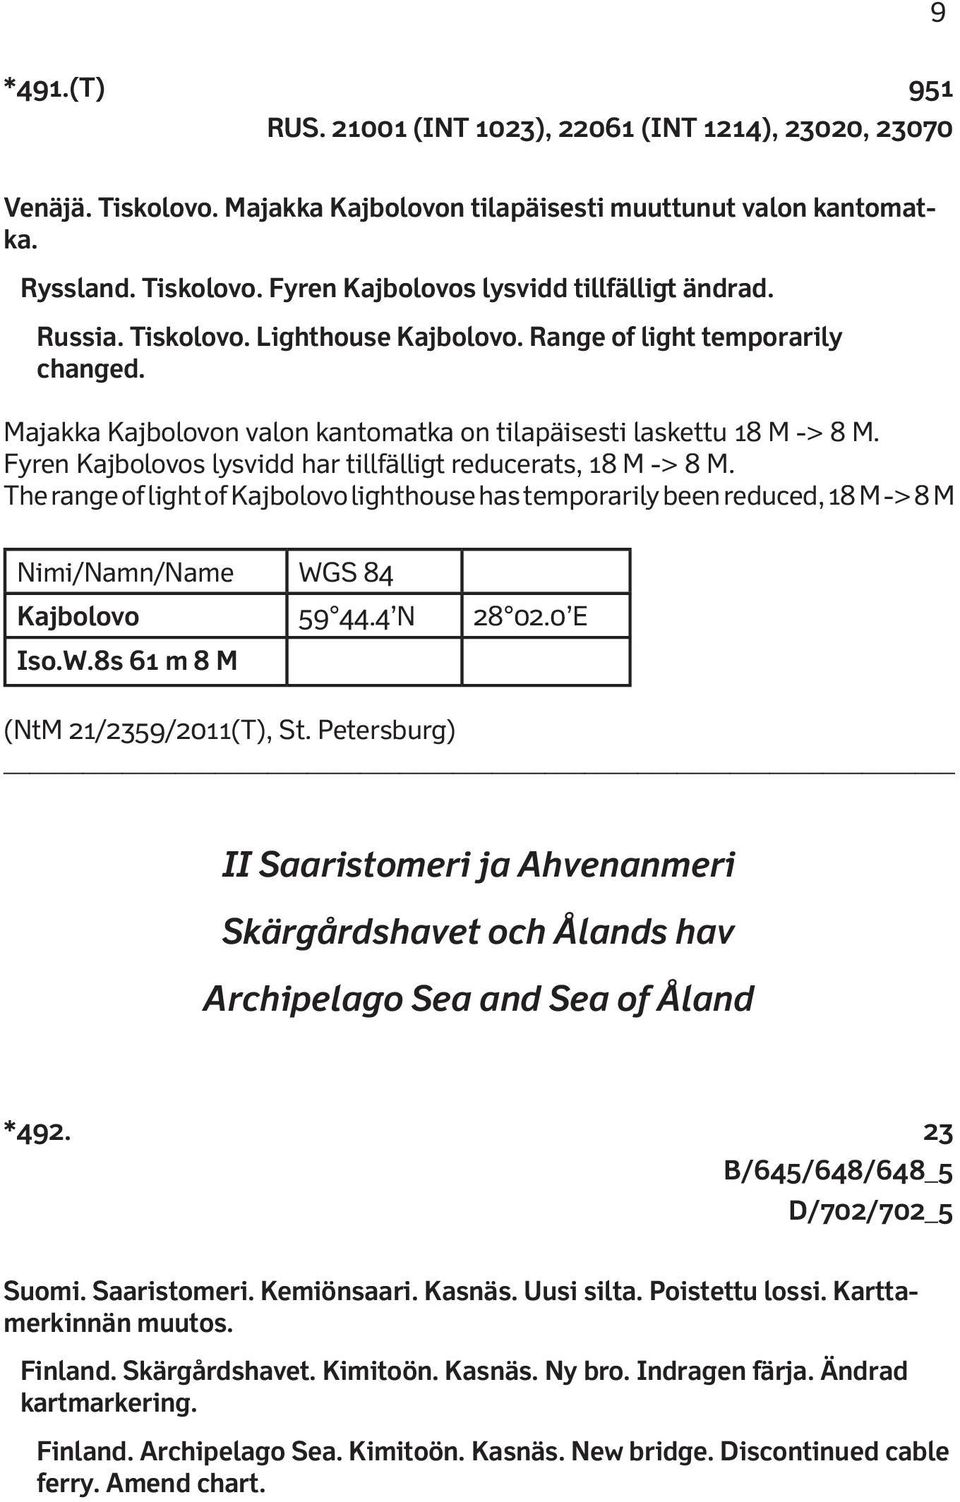 Fyren Kajbolovos lysvidd har tillfälligt reducerats, 18 M -> 8 M. The range of light of Kajbolovo lighthouse has temporarily been reduced, 18 M -> 8 M Nimi/Namn/Name WGS 84 Kajbolovo 59 44.4 N 28 02.